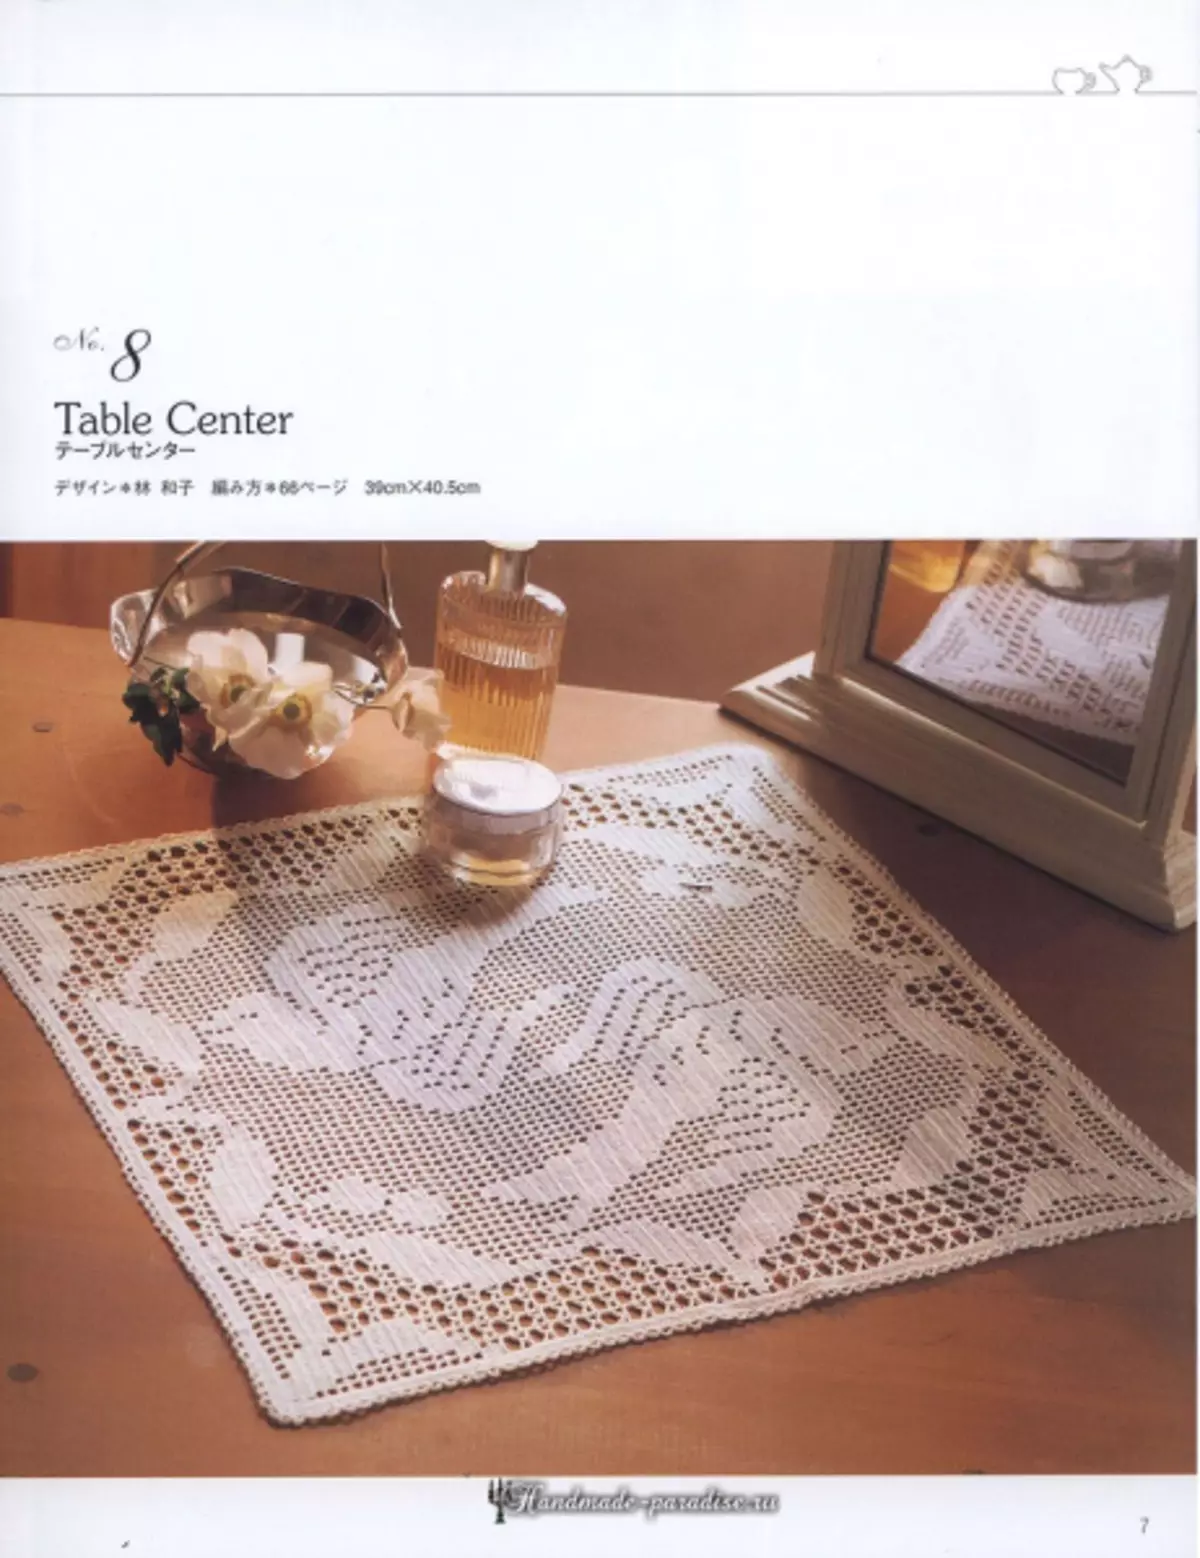 Majalah Mertune Mugi 2019 - Napkins sareng tablecloths